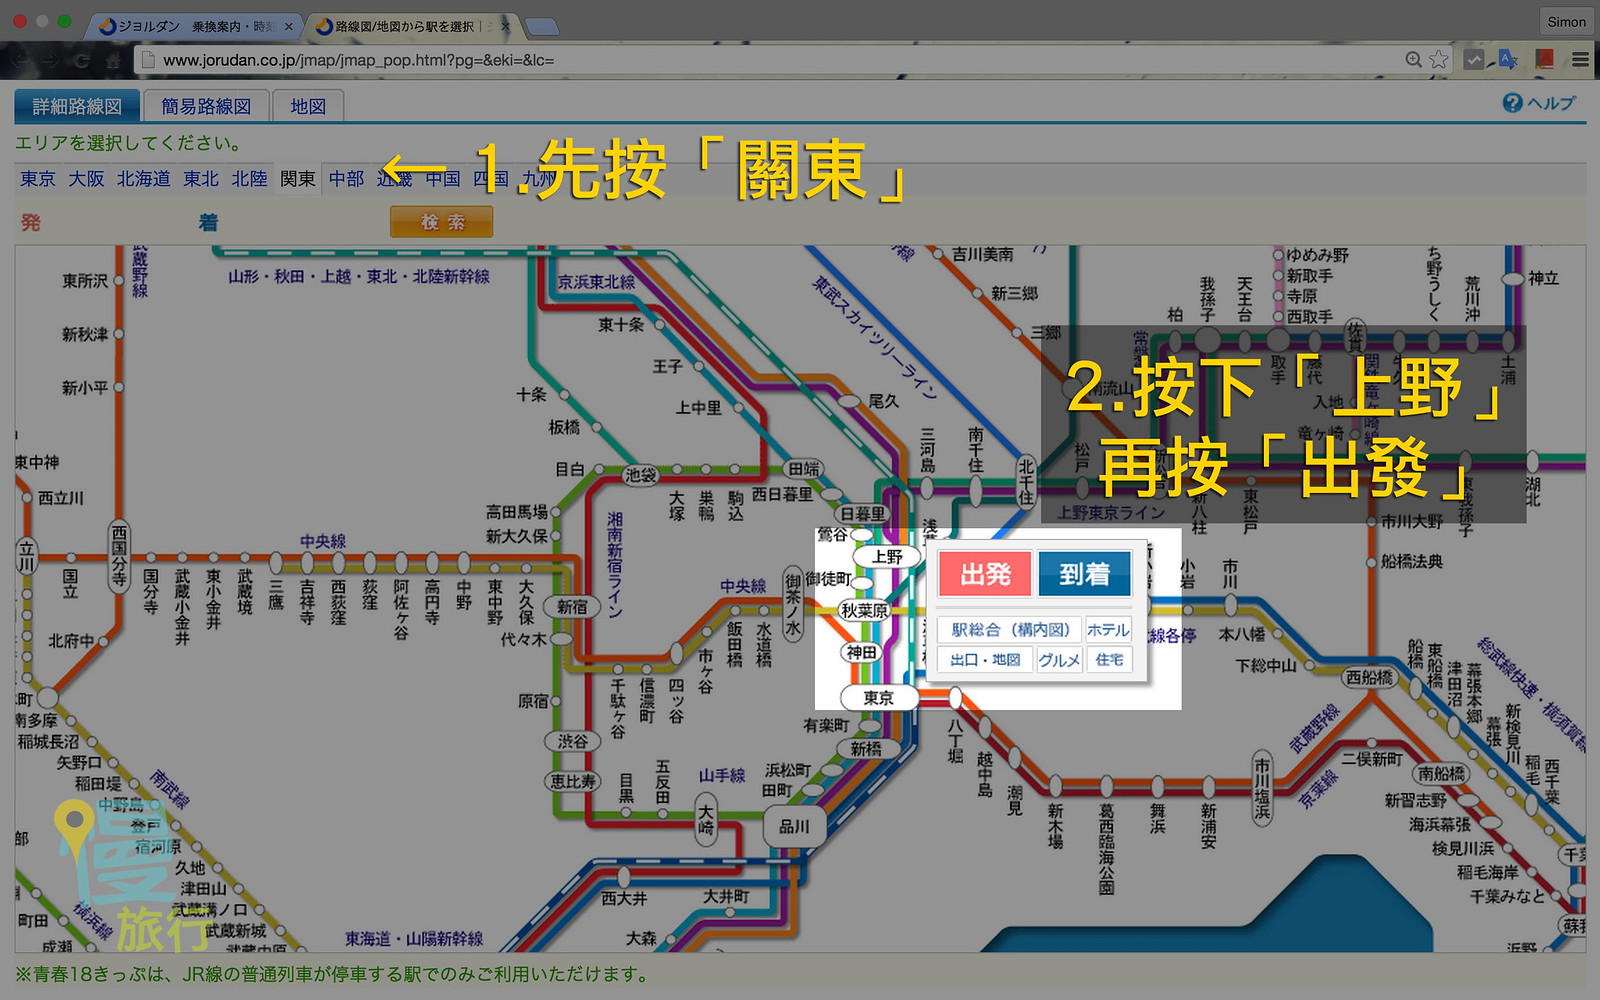 日本鐵路時刻表 www.jorudan.co.jp 使用教學